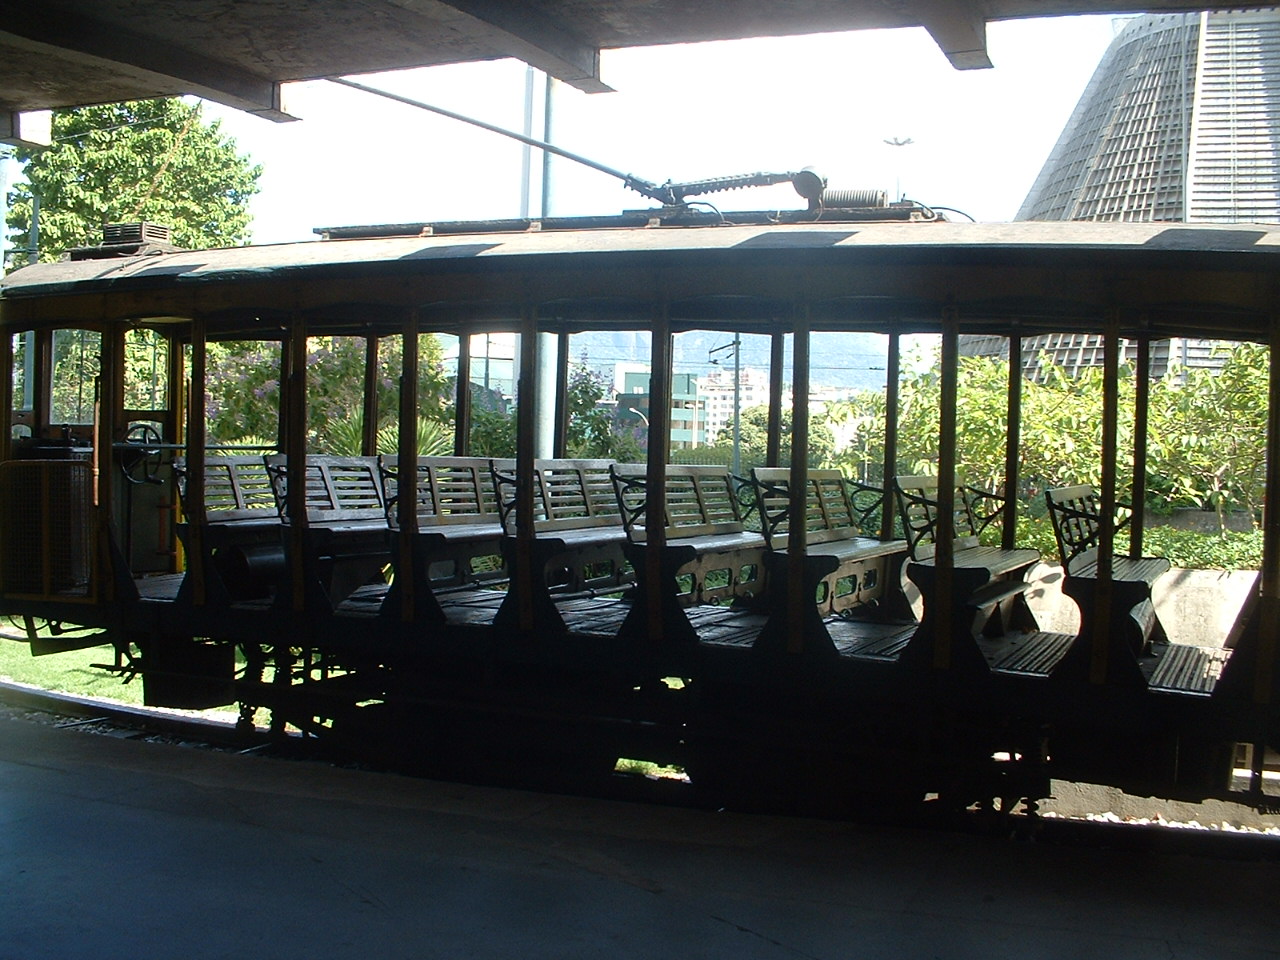 Rio de Janeiro  tram